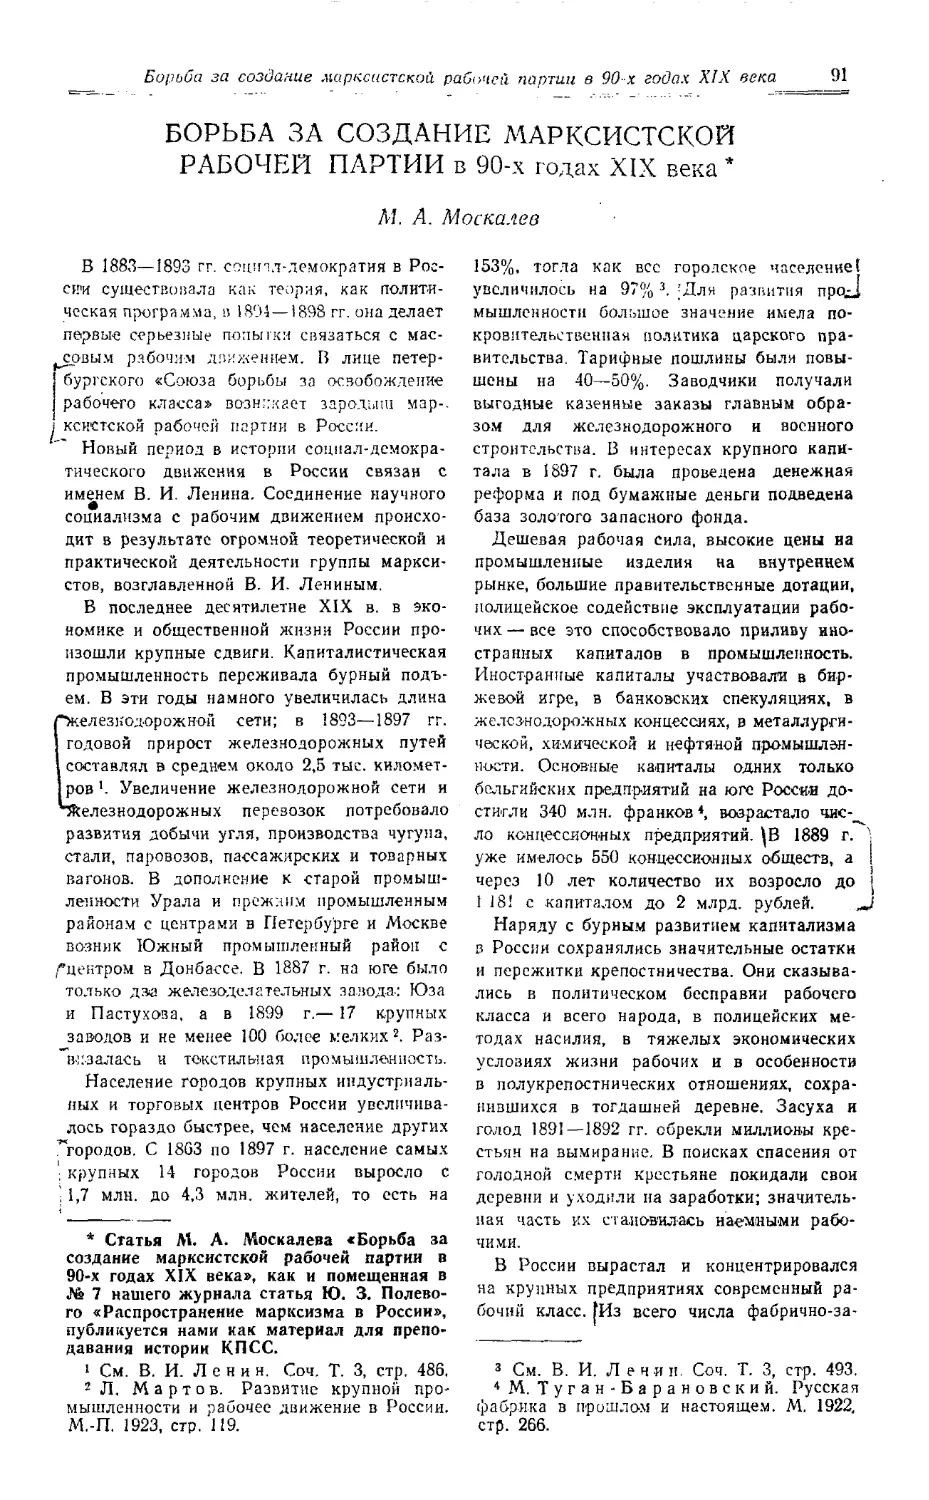 М. А. Москалев - Борьба за создание марксистской рабочей партии в 90-х годах XIX века